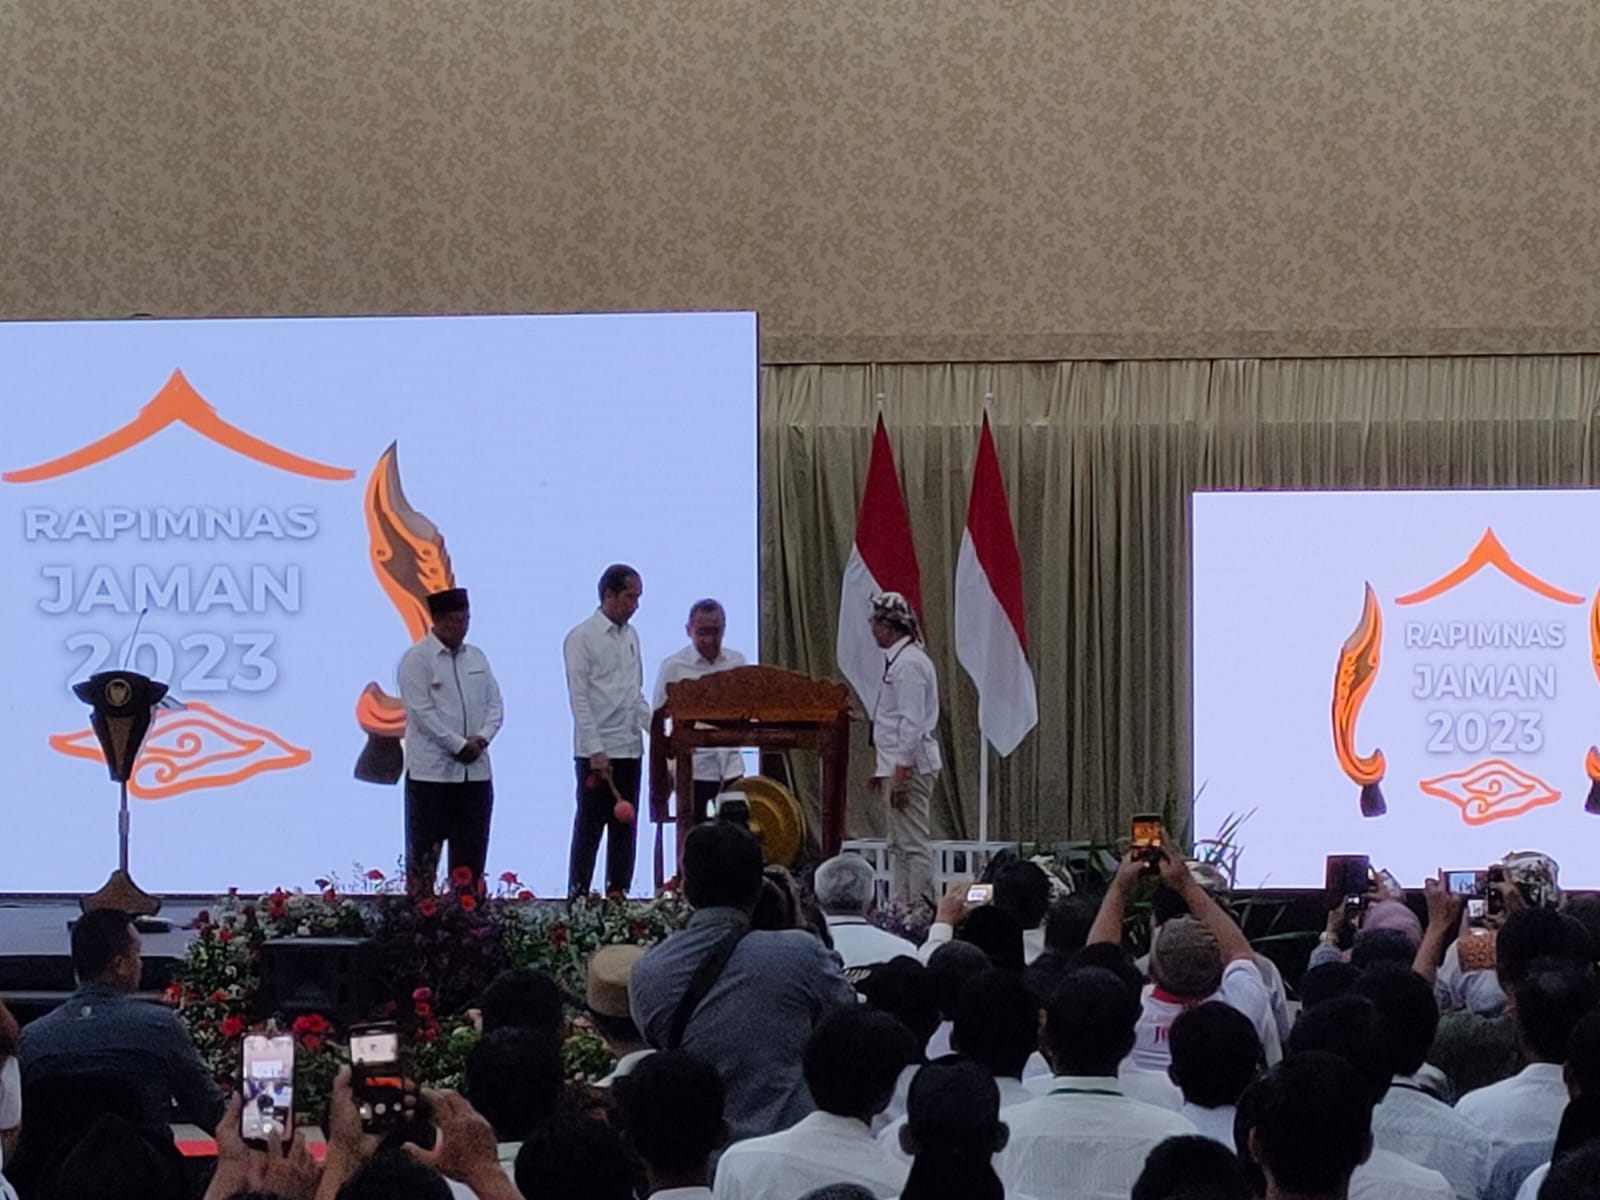 Buka Rapimnas Jaman di Kota Cirebon, Presiden Jokowi: Mereka Pekerja Lapangan, Saya Suka!